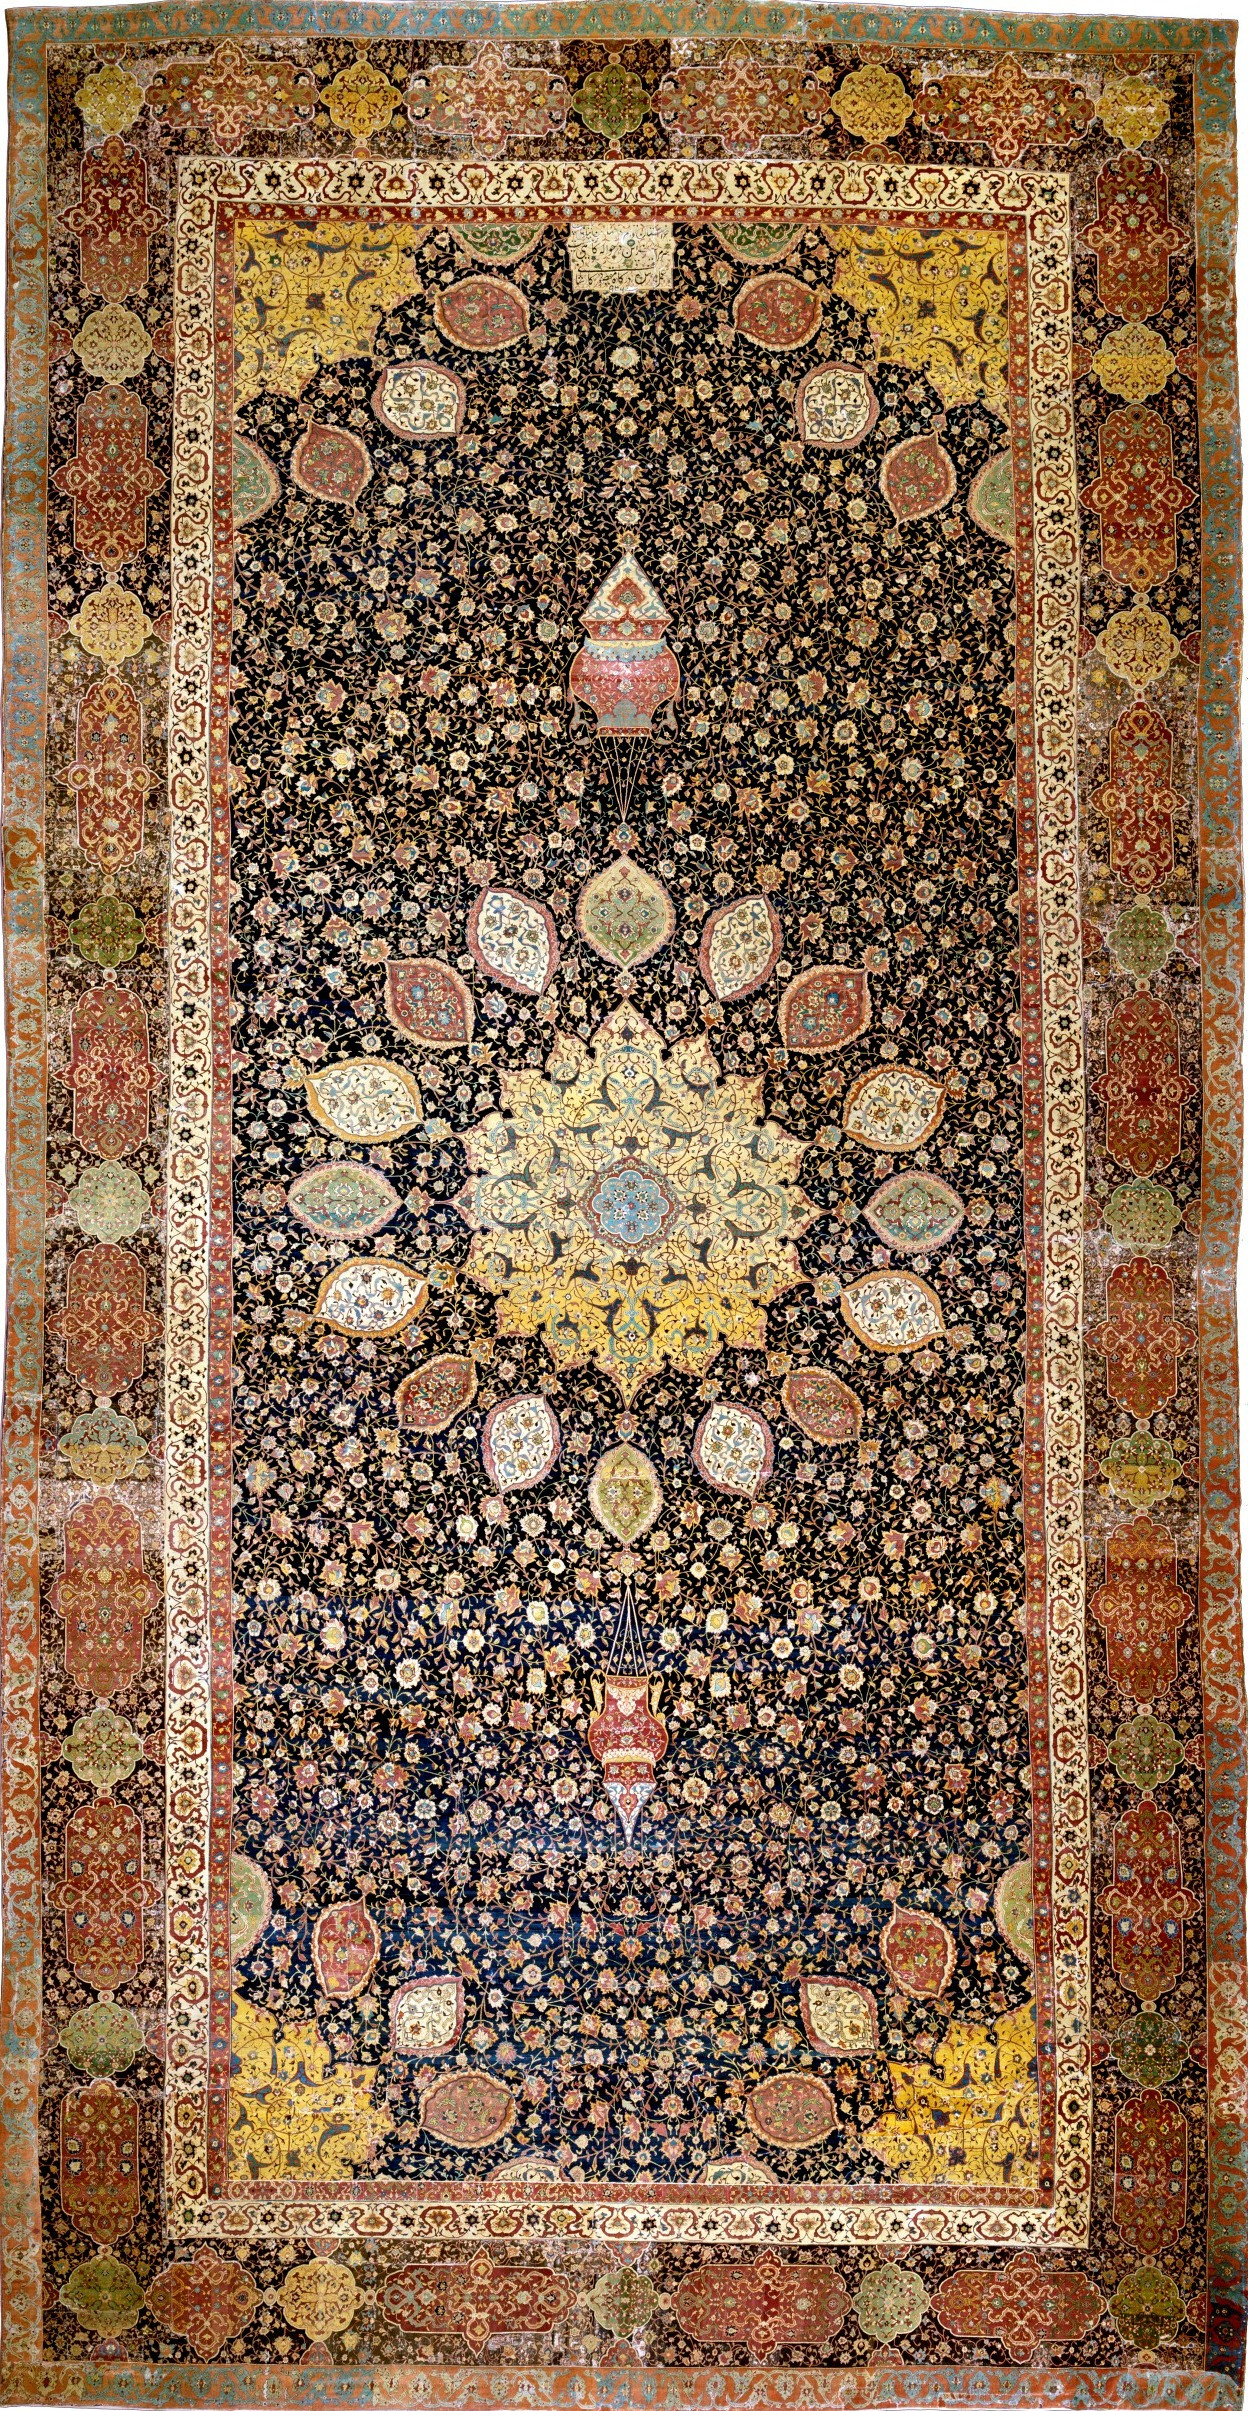 hardwood floors carpet on stairs of carpet wikipedia throughout carpet